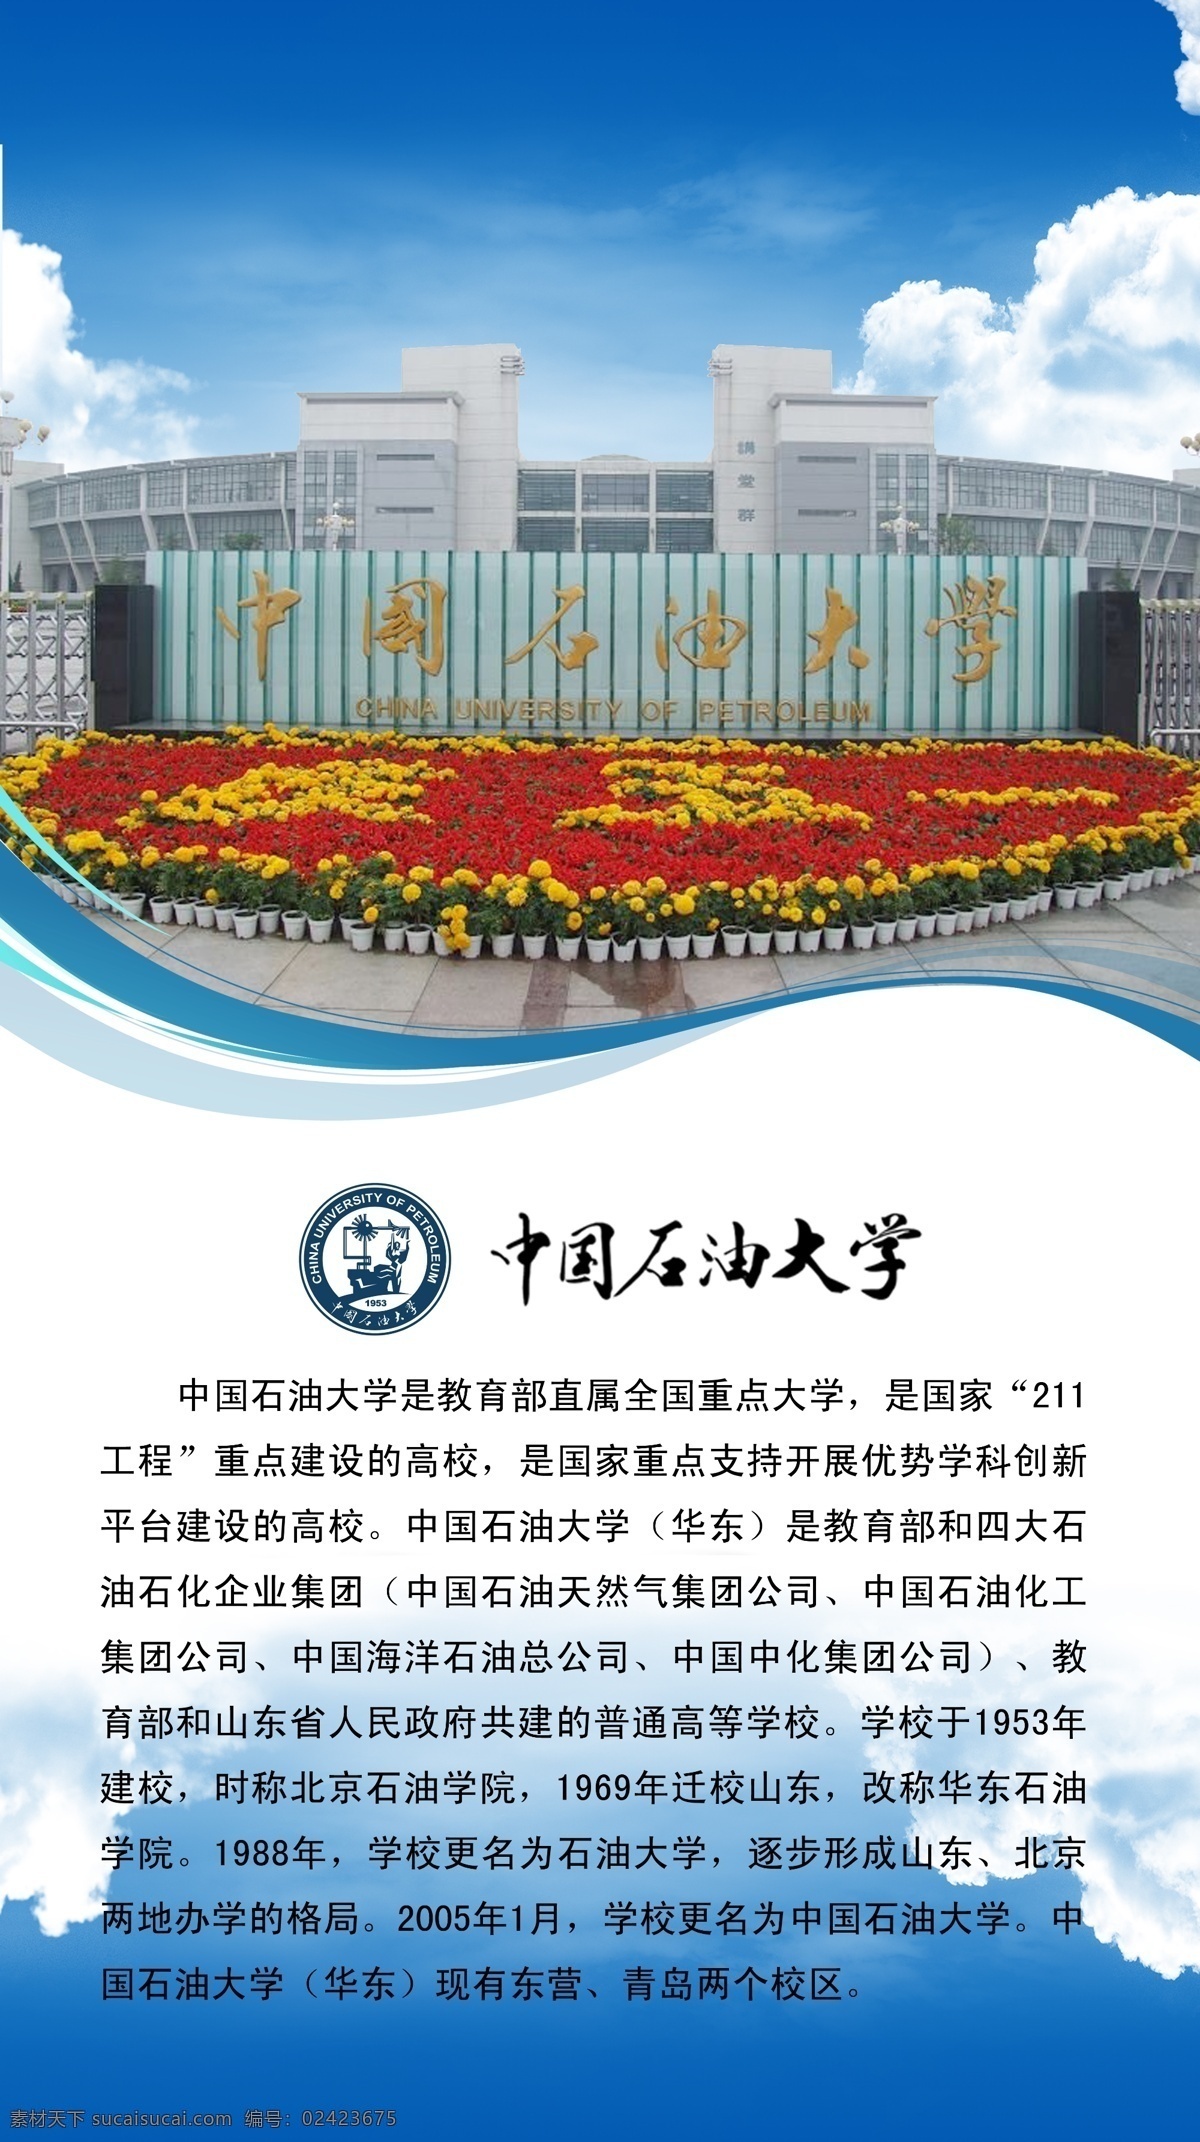 中国石油大学 简介 大学 211工程 挂图 标志 其他模版 广告设计模板 源文件